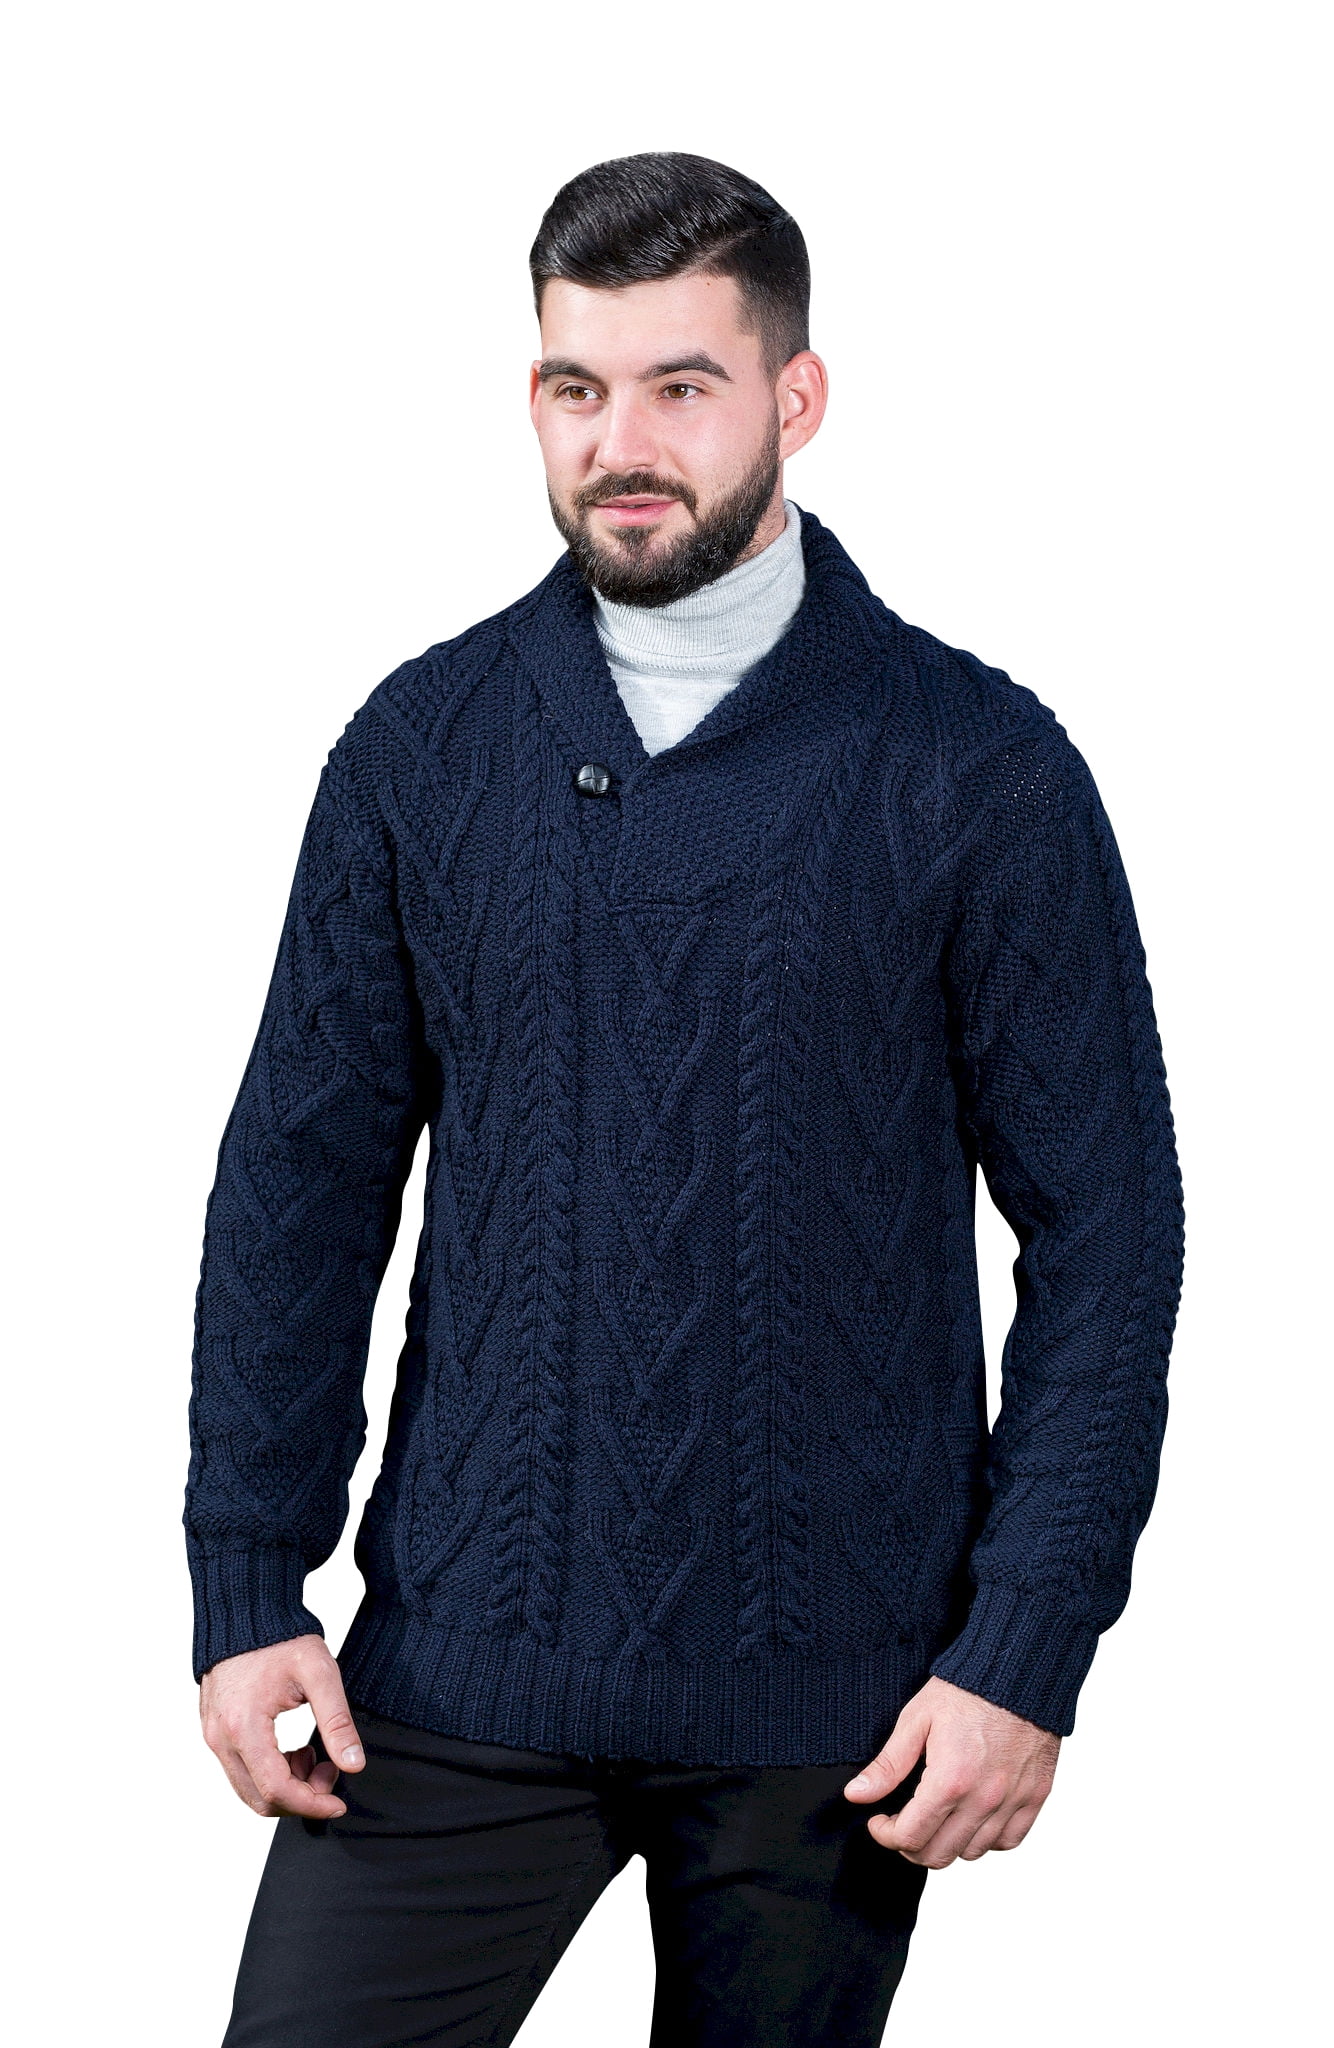 SAOL - SAOL Irish Fisherman Sweater for Men 100% Merino Wool Aran Cable ...